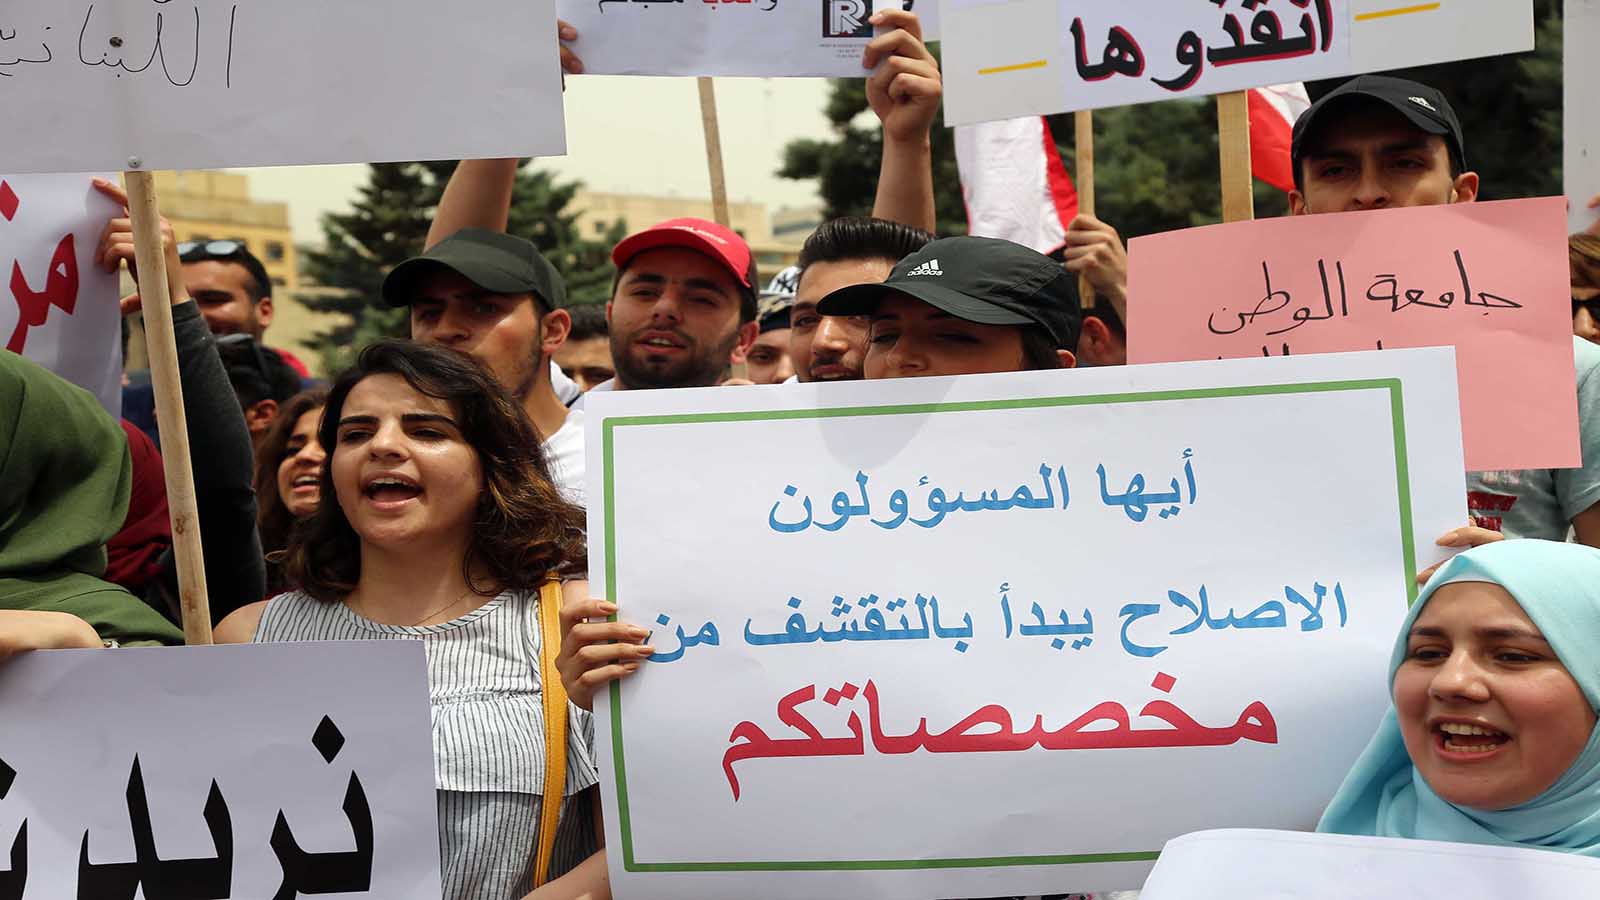 أساتذة "اللبنانية" وطلابها.. معاً لحماية الجامعة وحقوقها